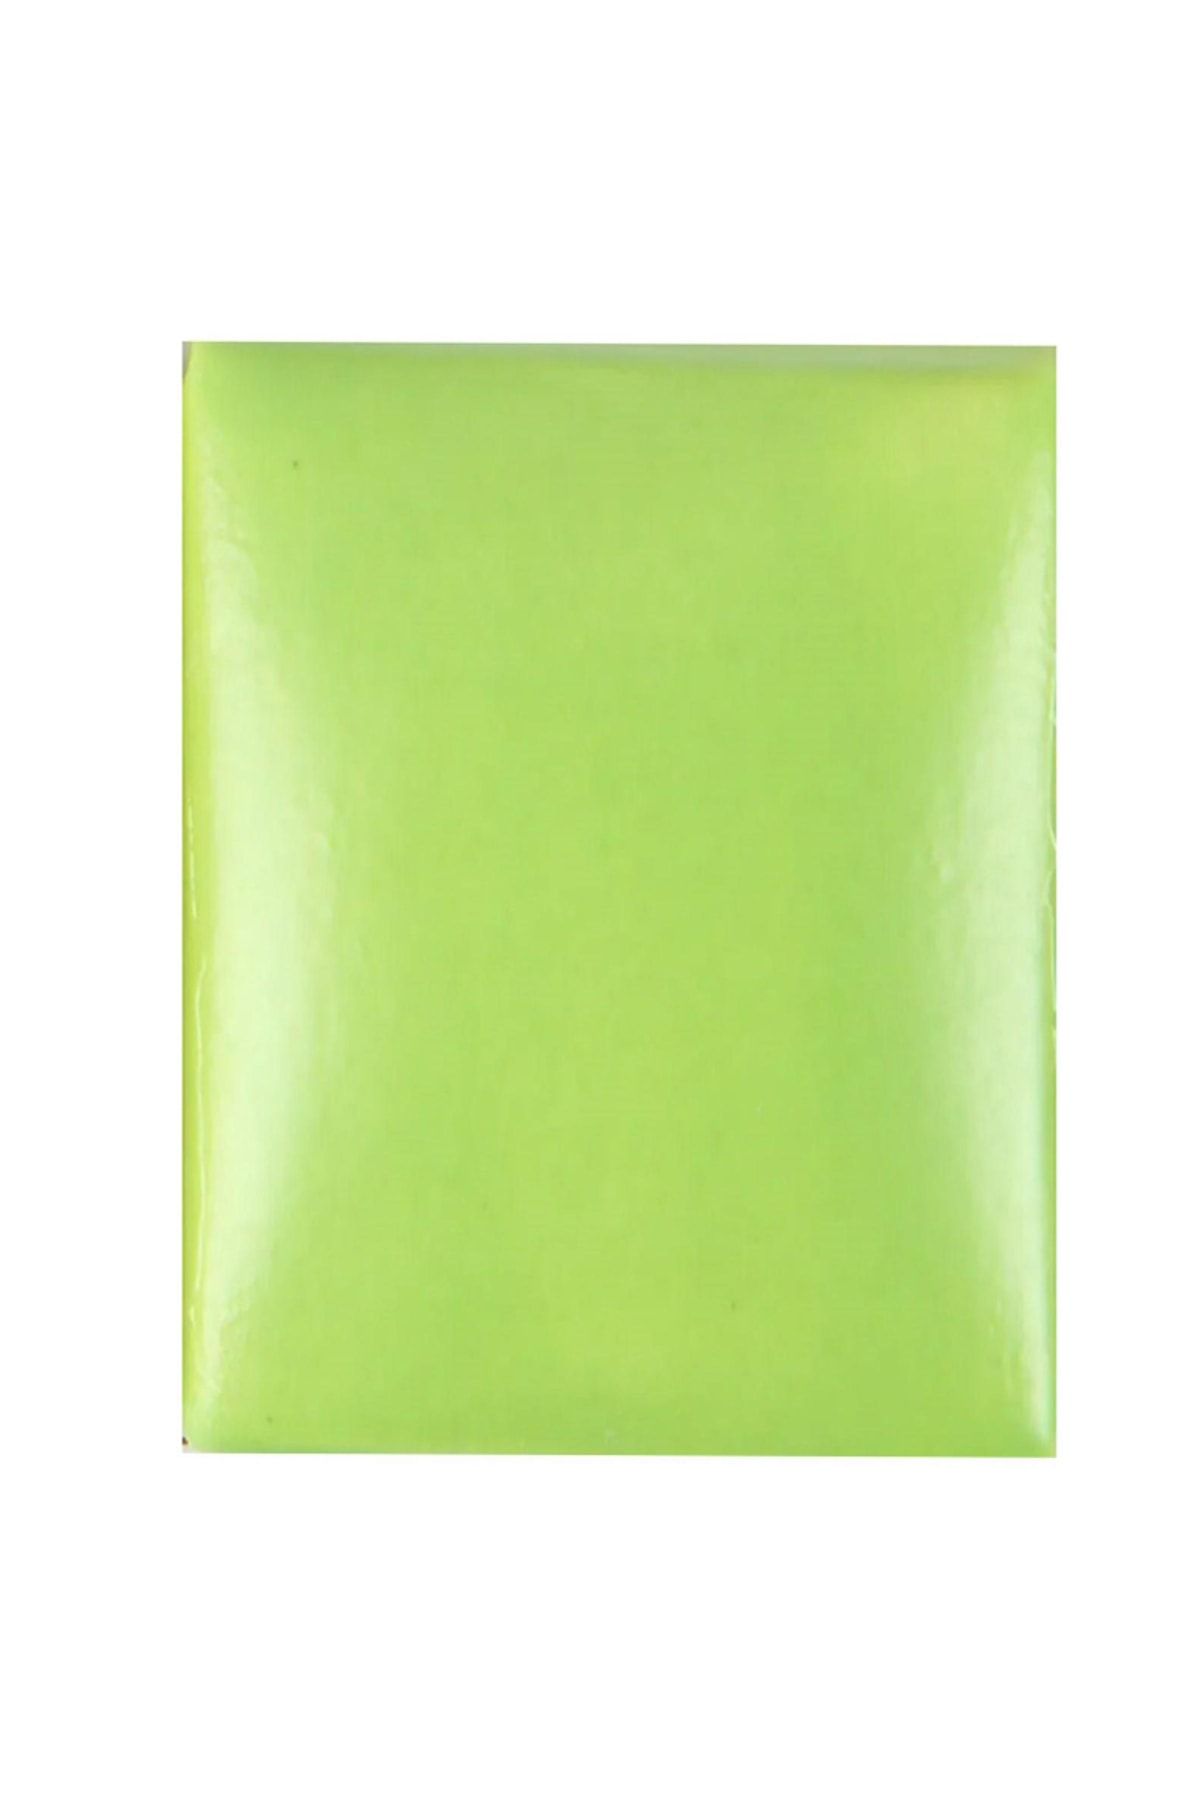 Refsan Duncan Sn379 Neon Green (YARI MAT) - 118 ml